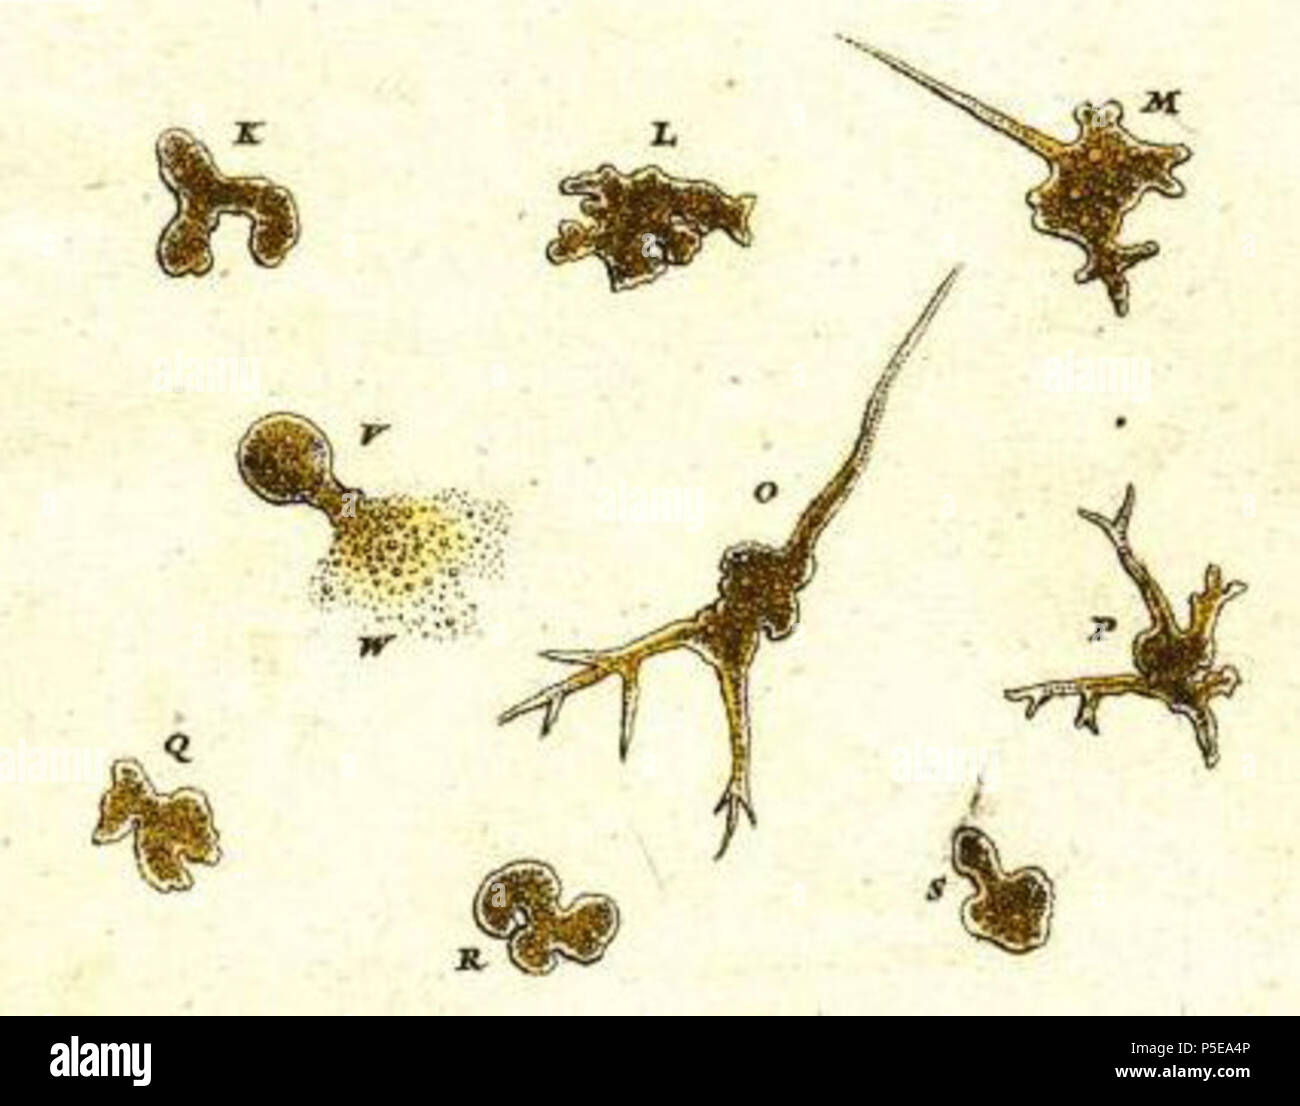 N/A. Inglese: il primo record e illustrazione di un ameba (eventualmente caos carolinense), da Roesel von Rosenhof's Insecten-Belustigung . 1755. Augusto Iohannes Roesel von Rosenhof 436 Der Kleine Proteus da Roesel Foto Stock